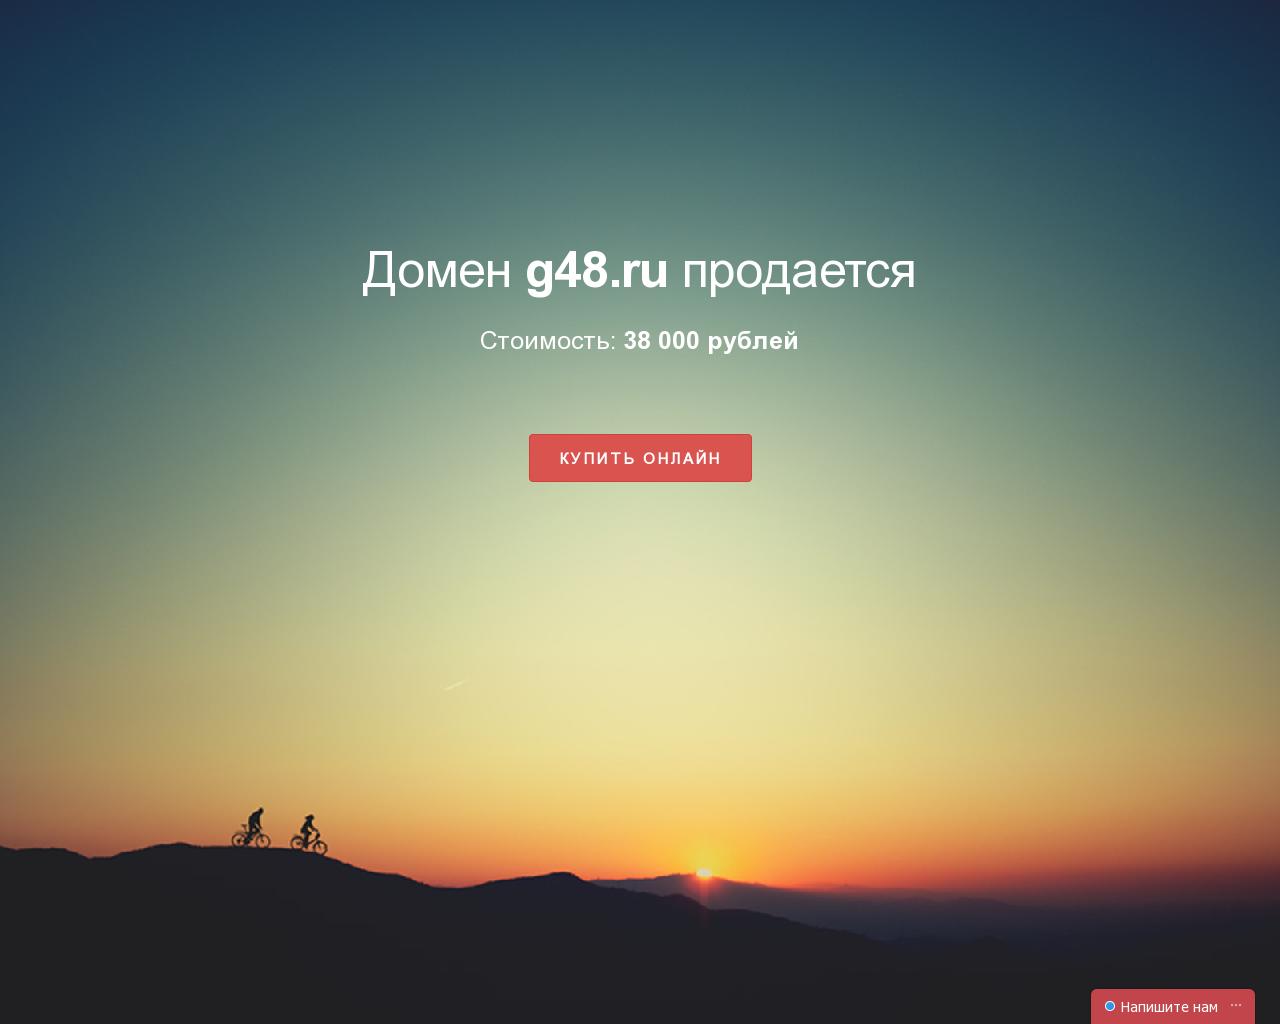 Изображение сайта g48.ru в разрешении 1280x1024